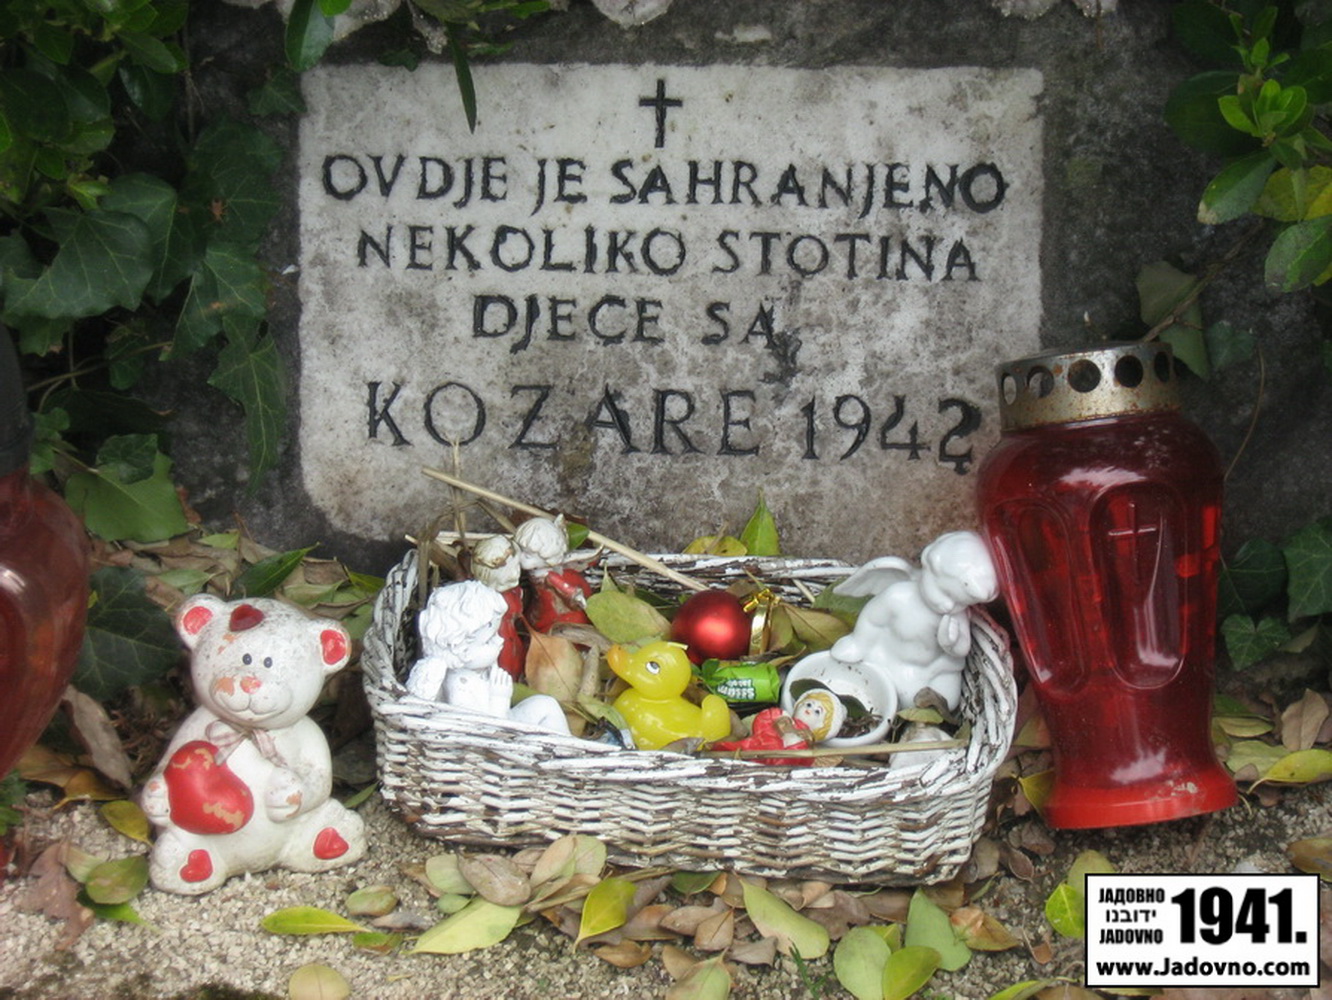 Споменик српској дјеци са Козаре на загребачком гробљу Мирогој